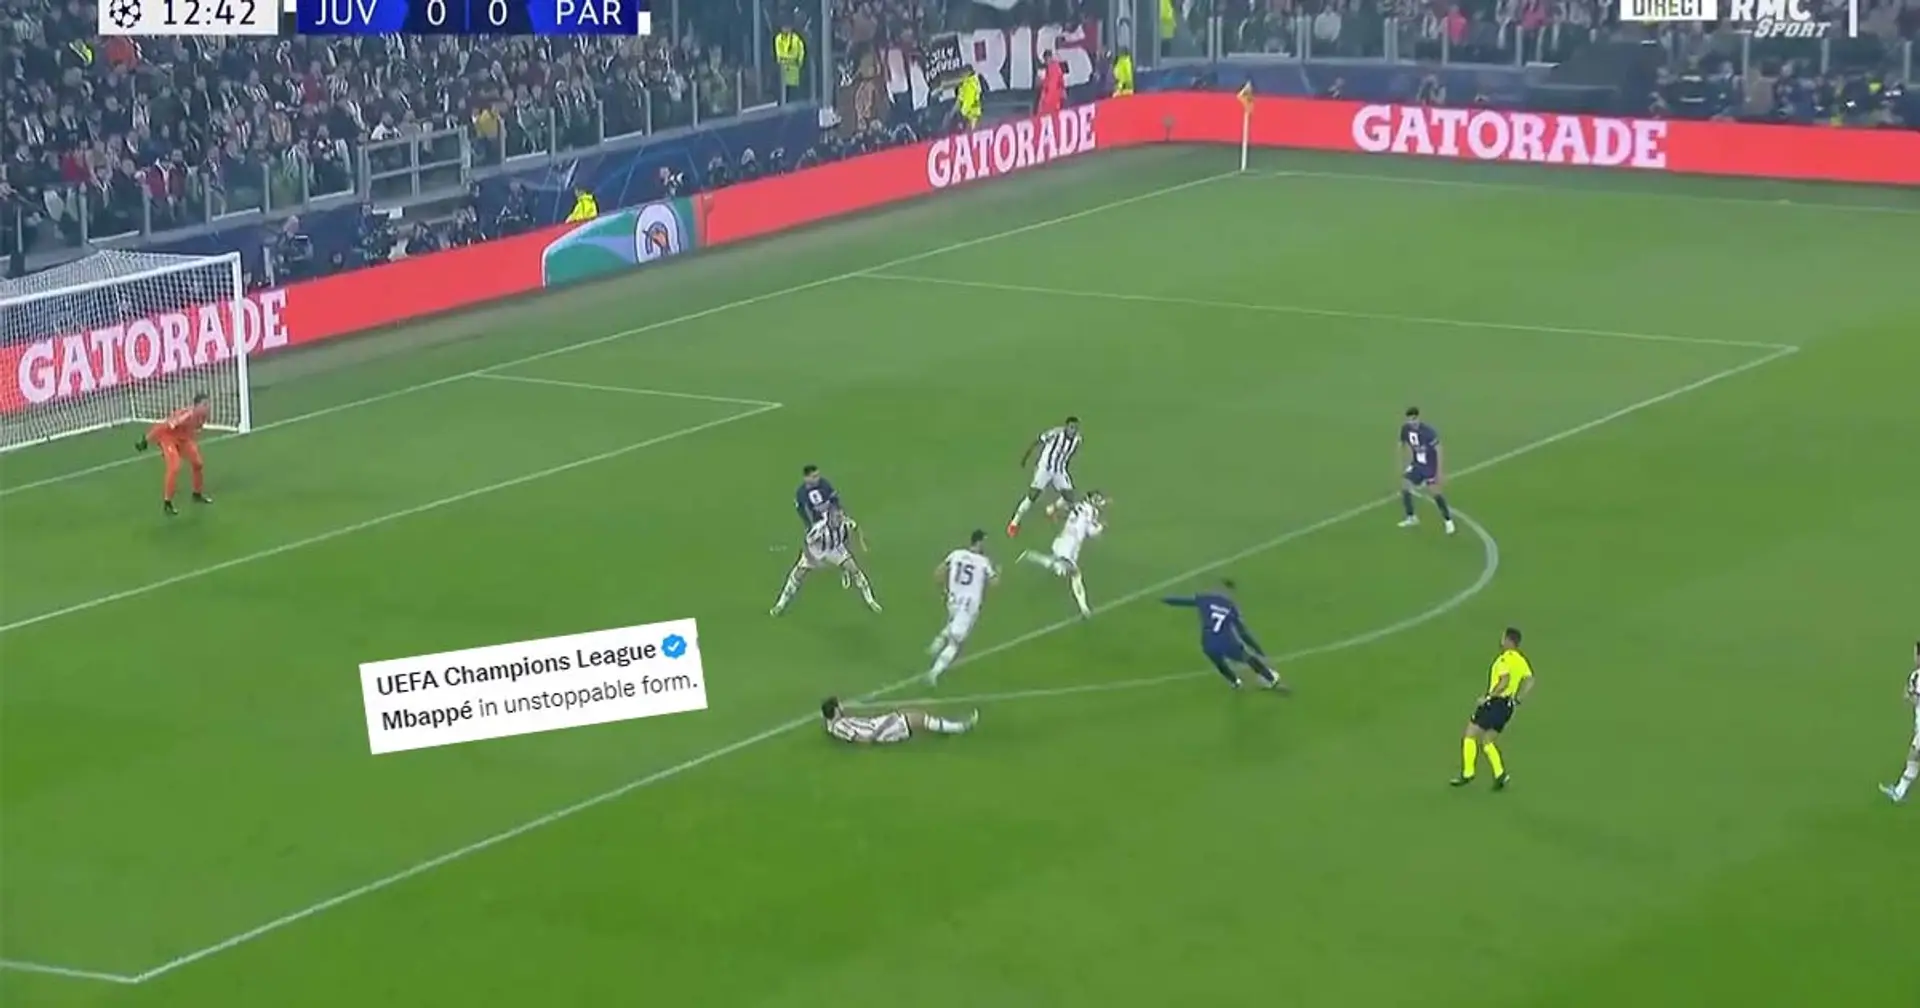 "Mbappé vient de mettre Gatti sur la carte du football", Kylian fait exploser Twitter après son but de malade contre la Juve